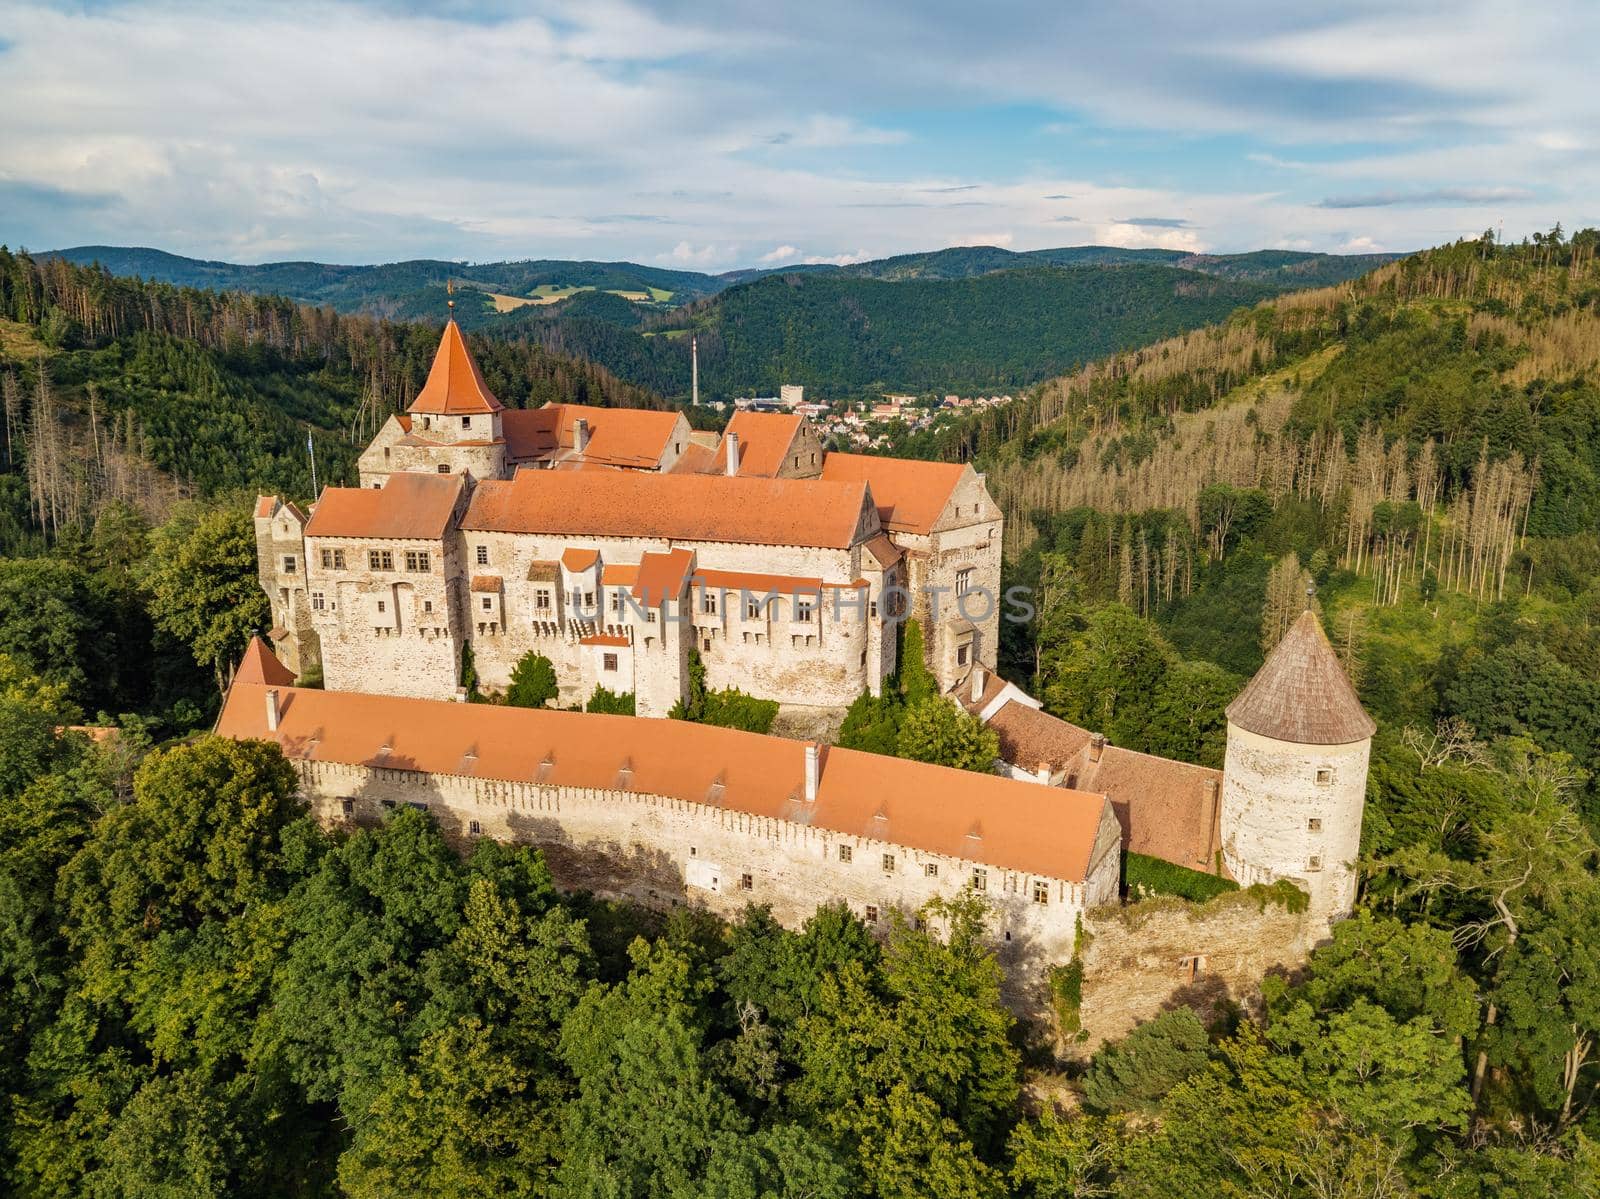 historical medieval castle Pernstejn, Czech Republic by artush